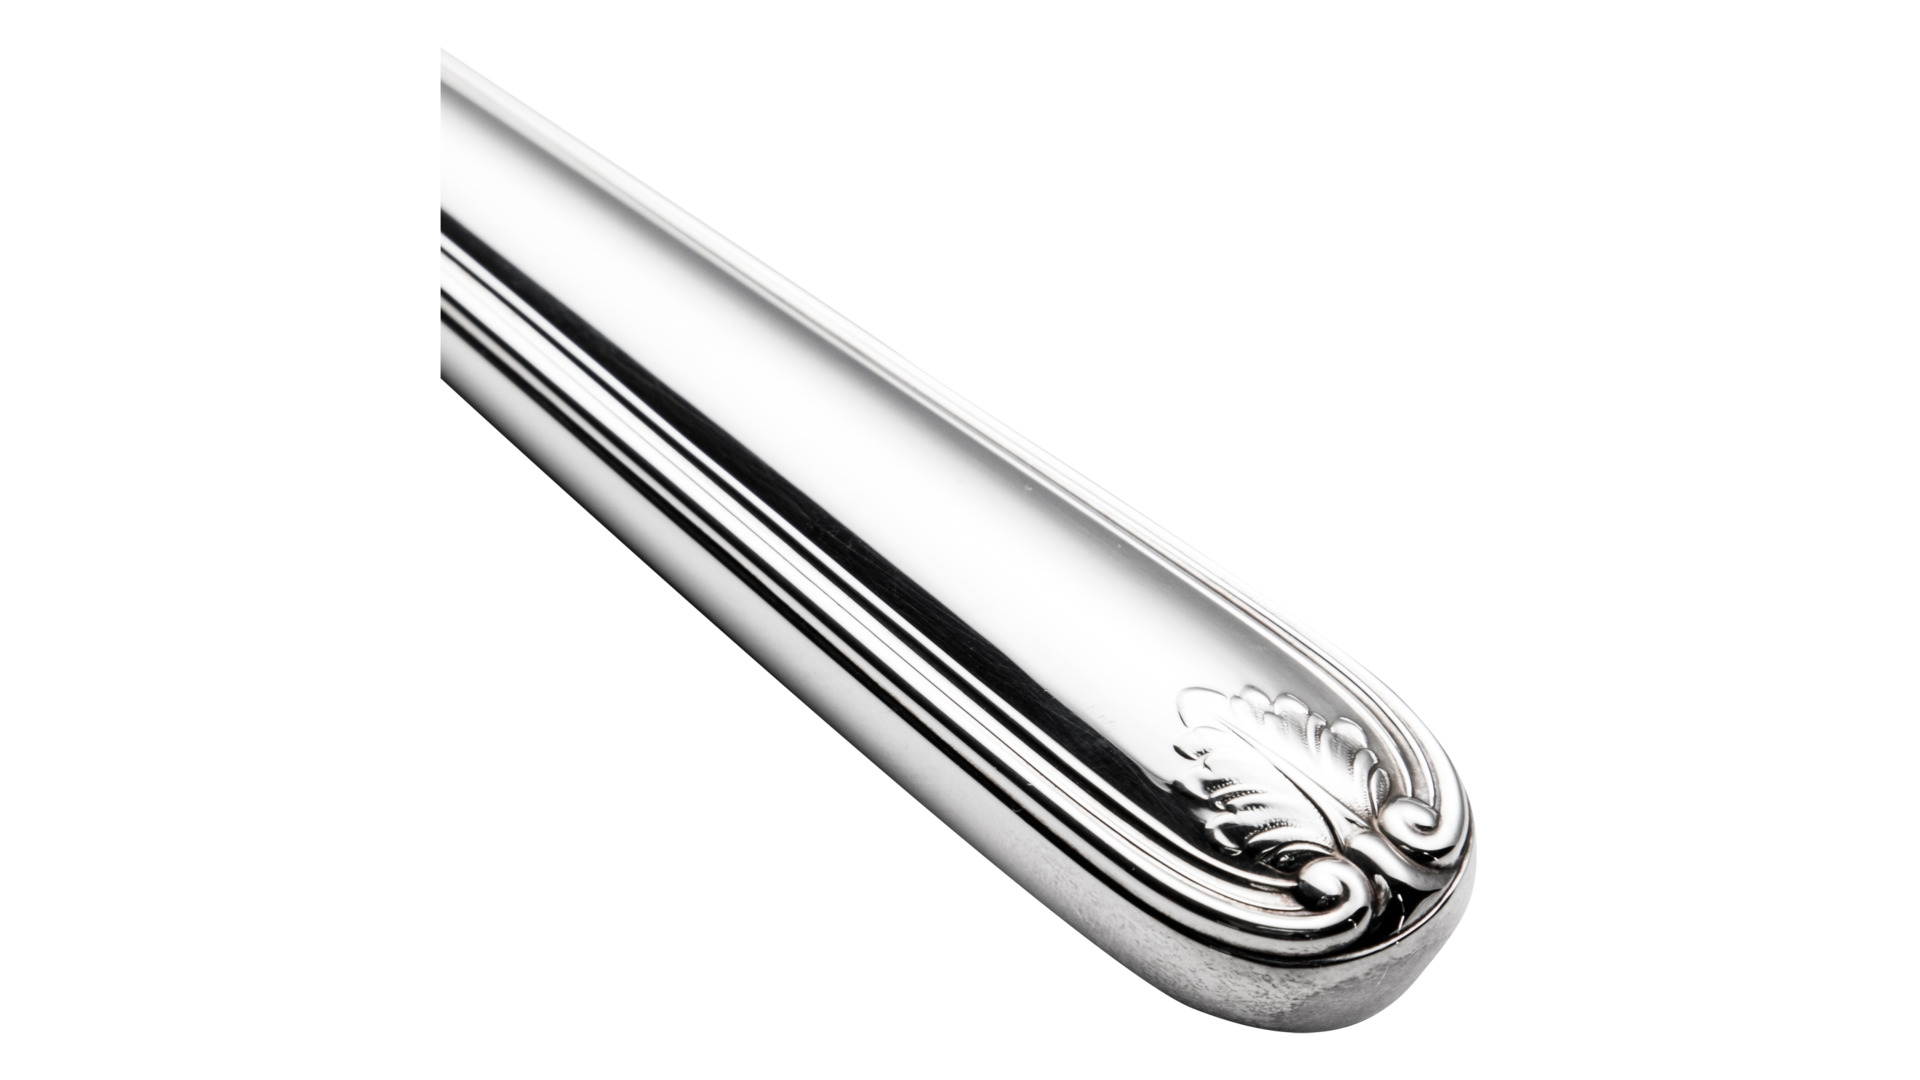 Набор ножей столовых Schiavon Фолья 25см,  6шт,  серебро 925